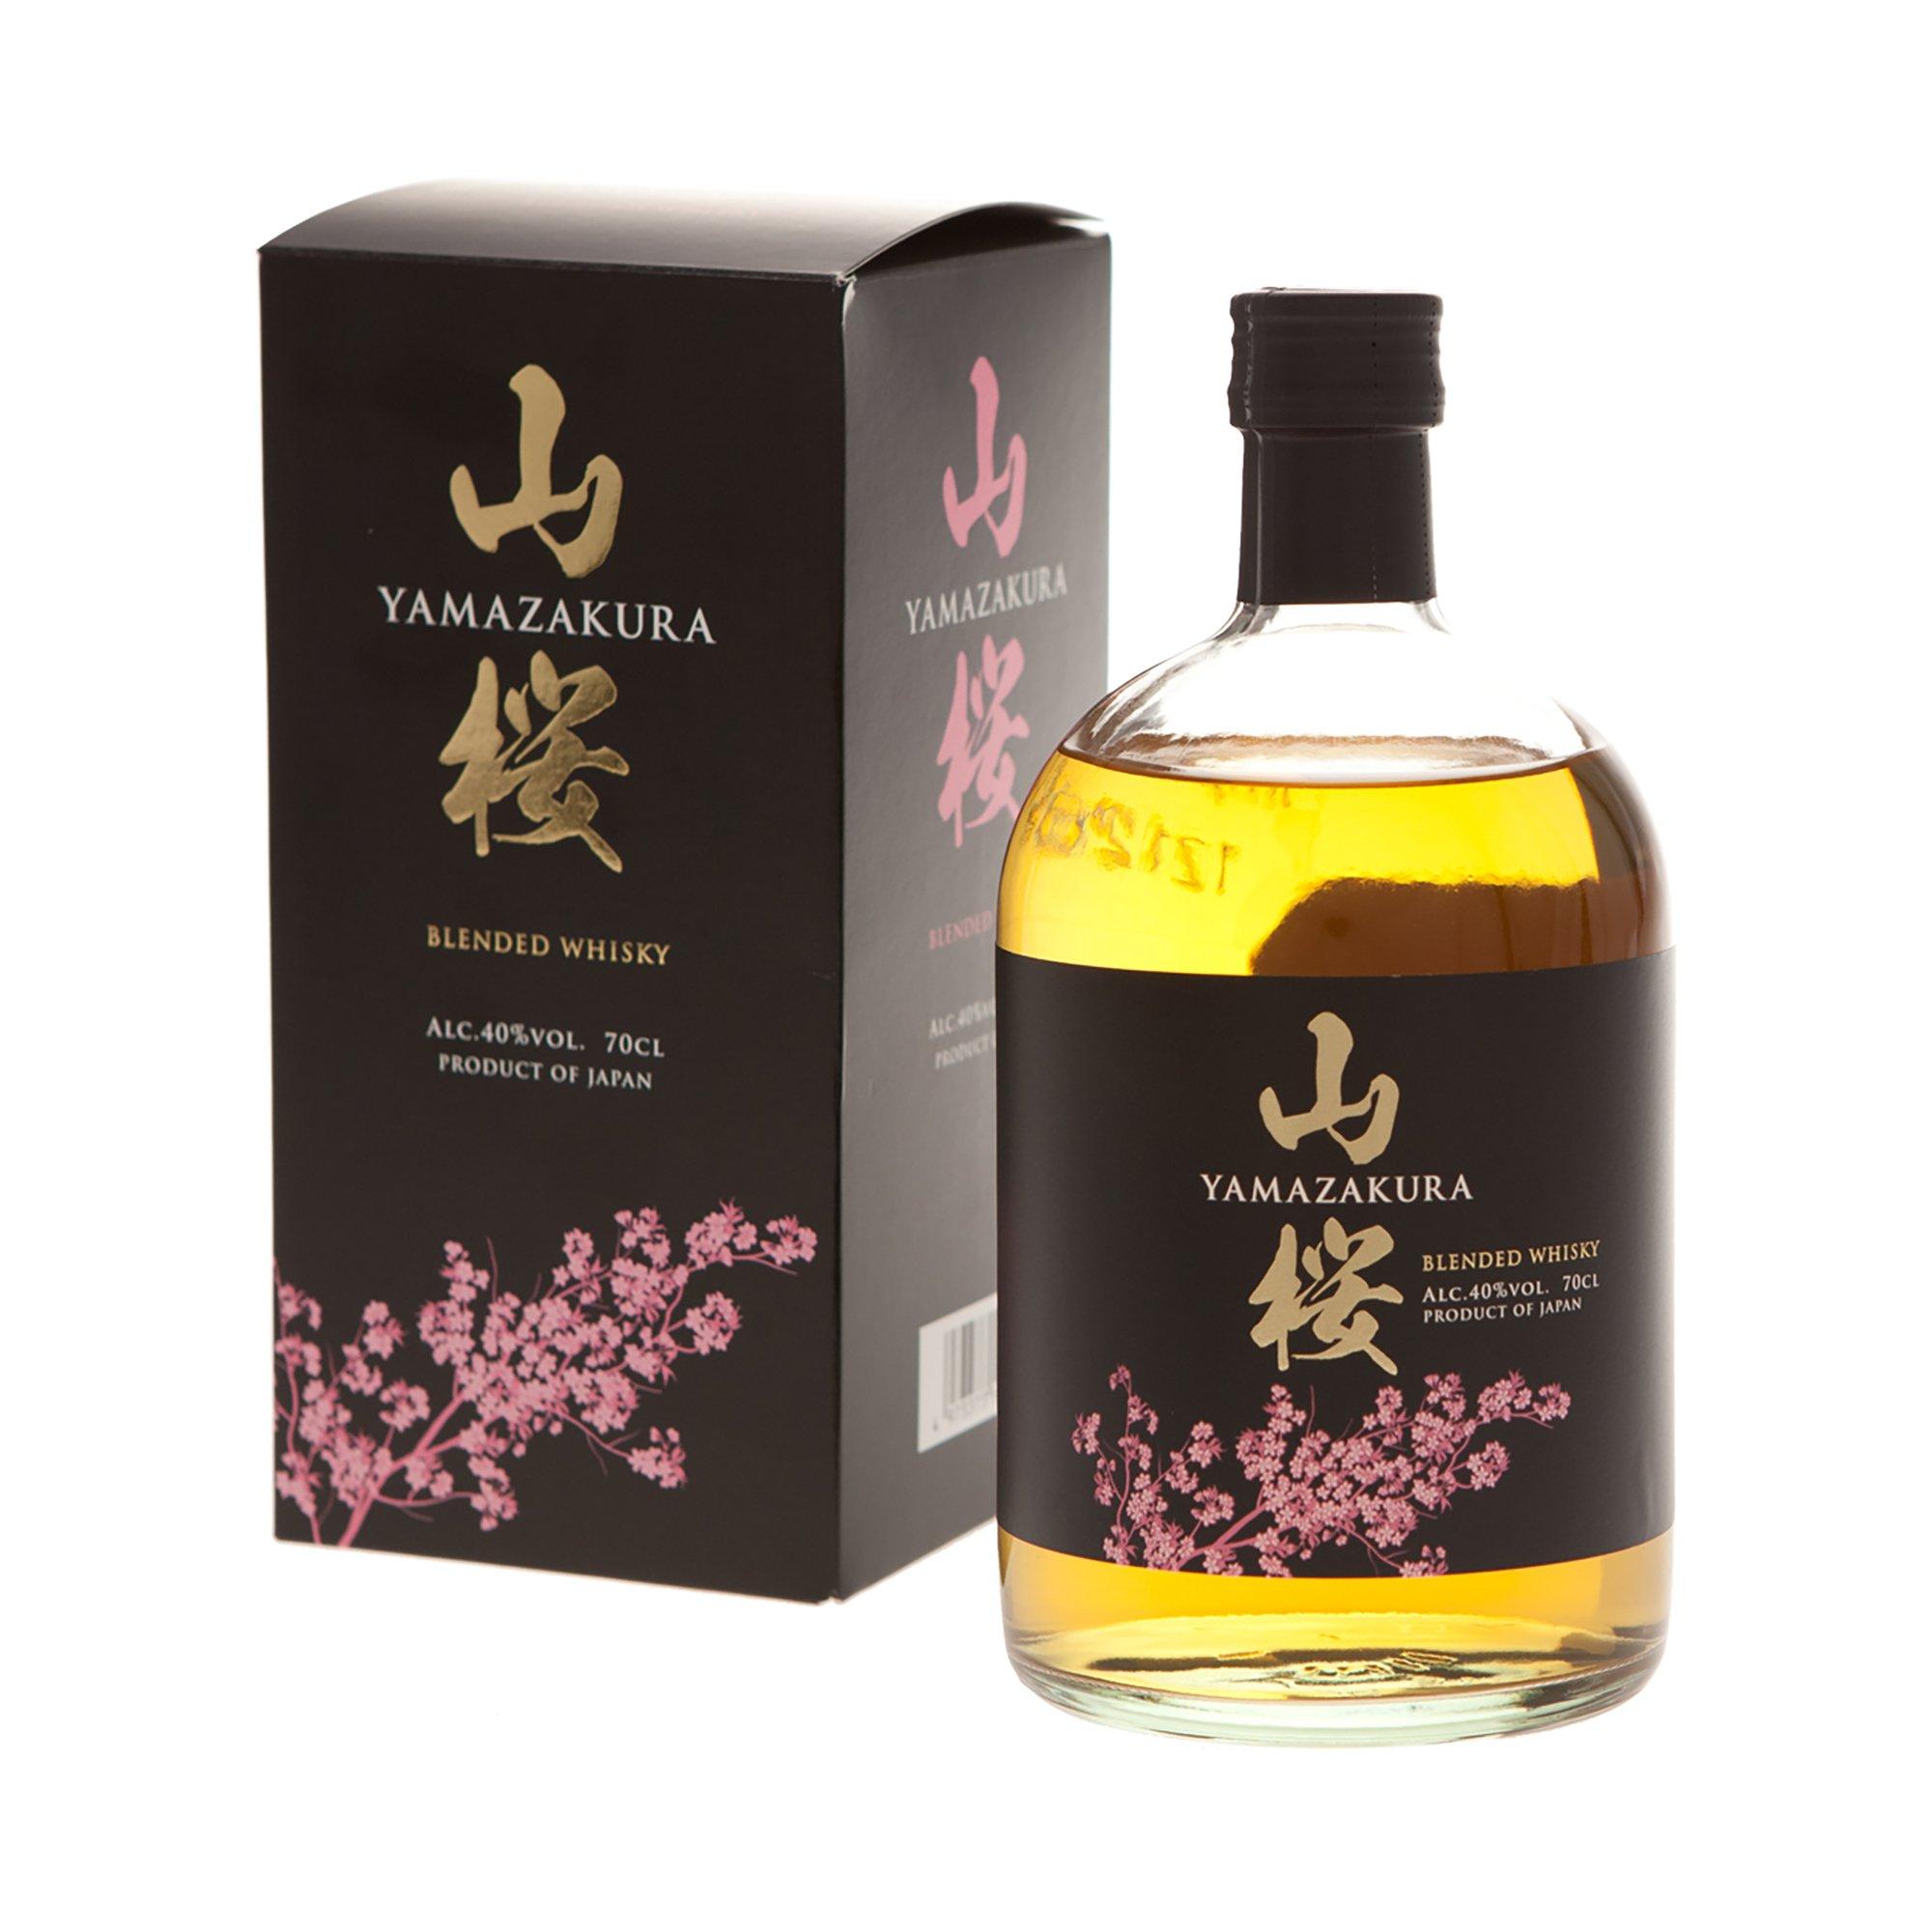 Image of Yamazakura Japanese Blended Whisky